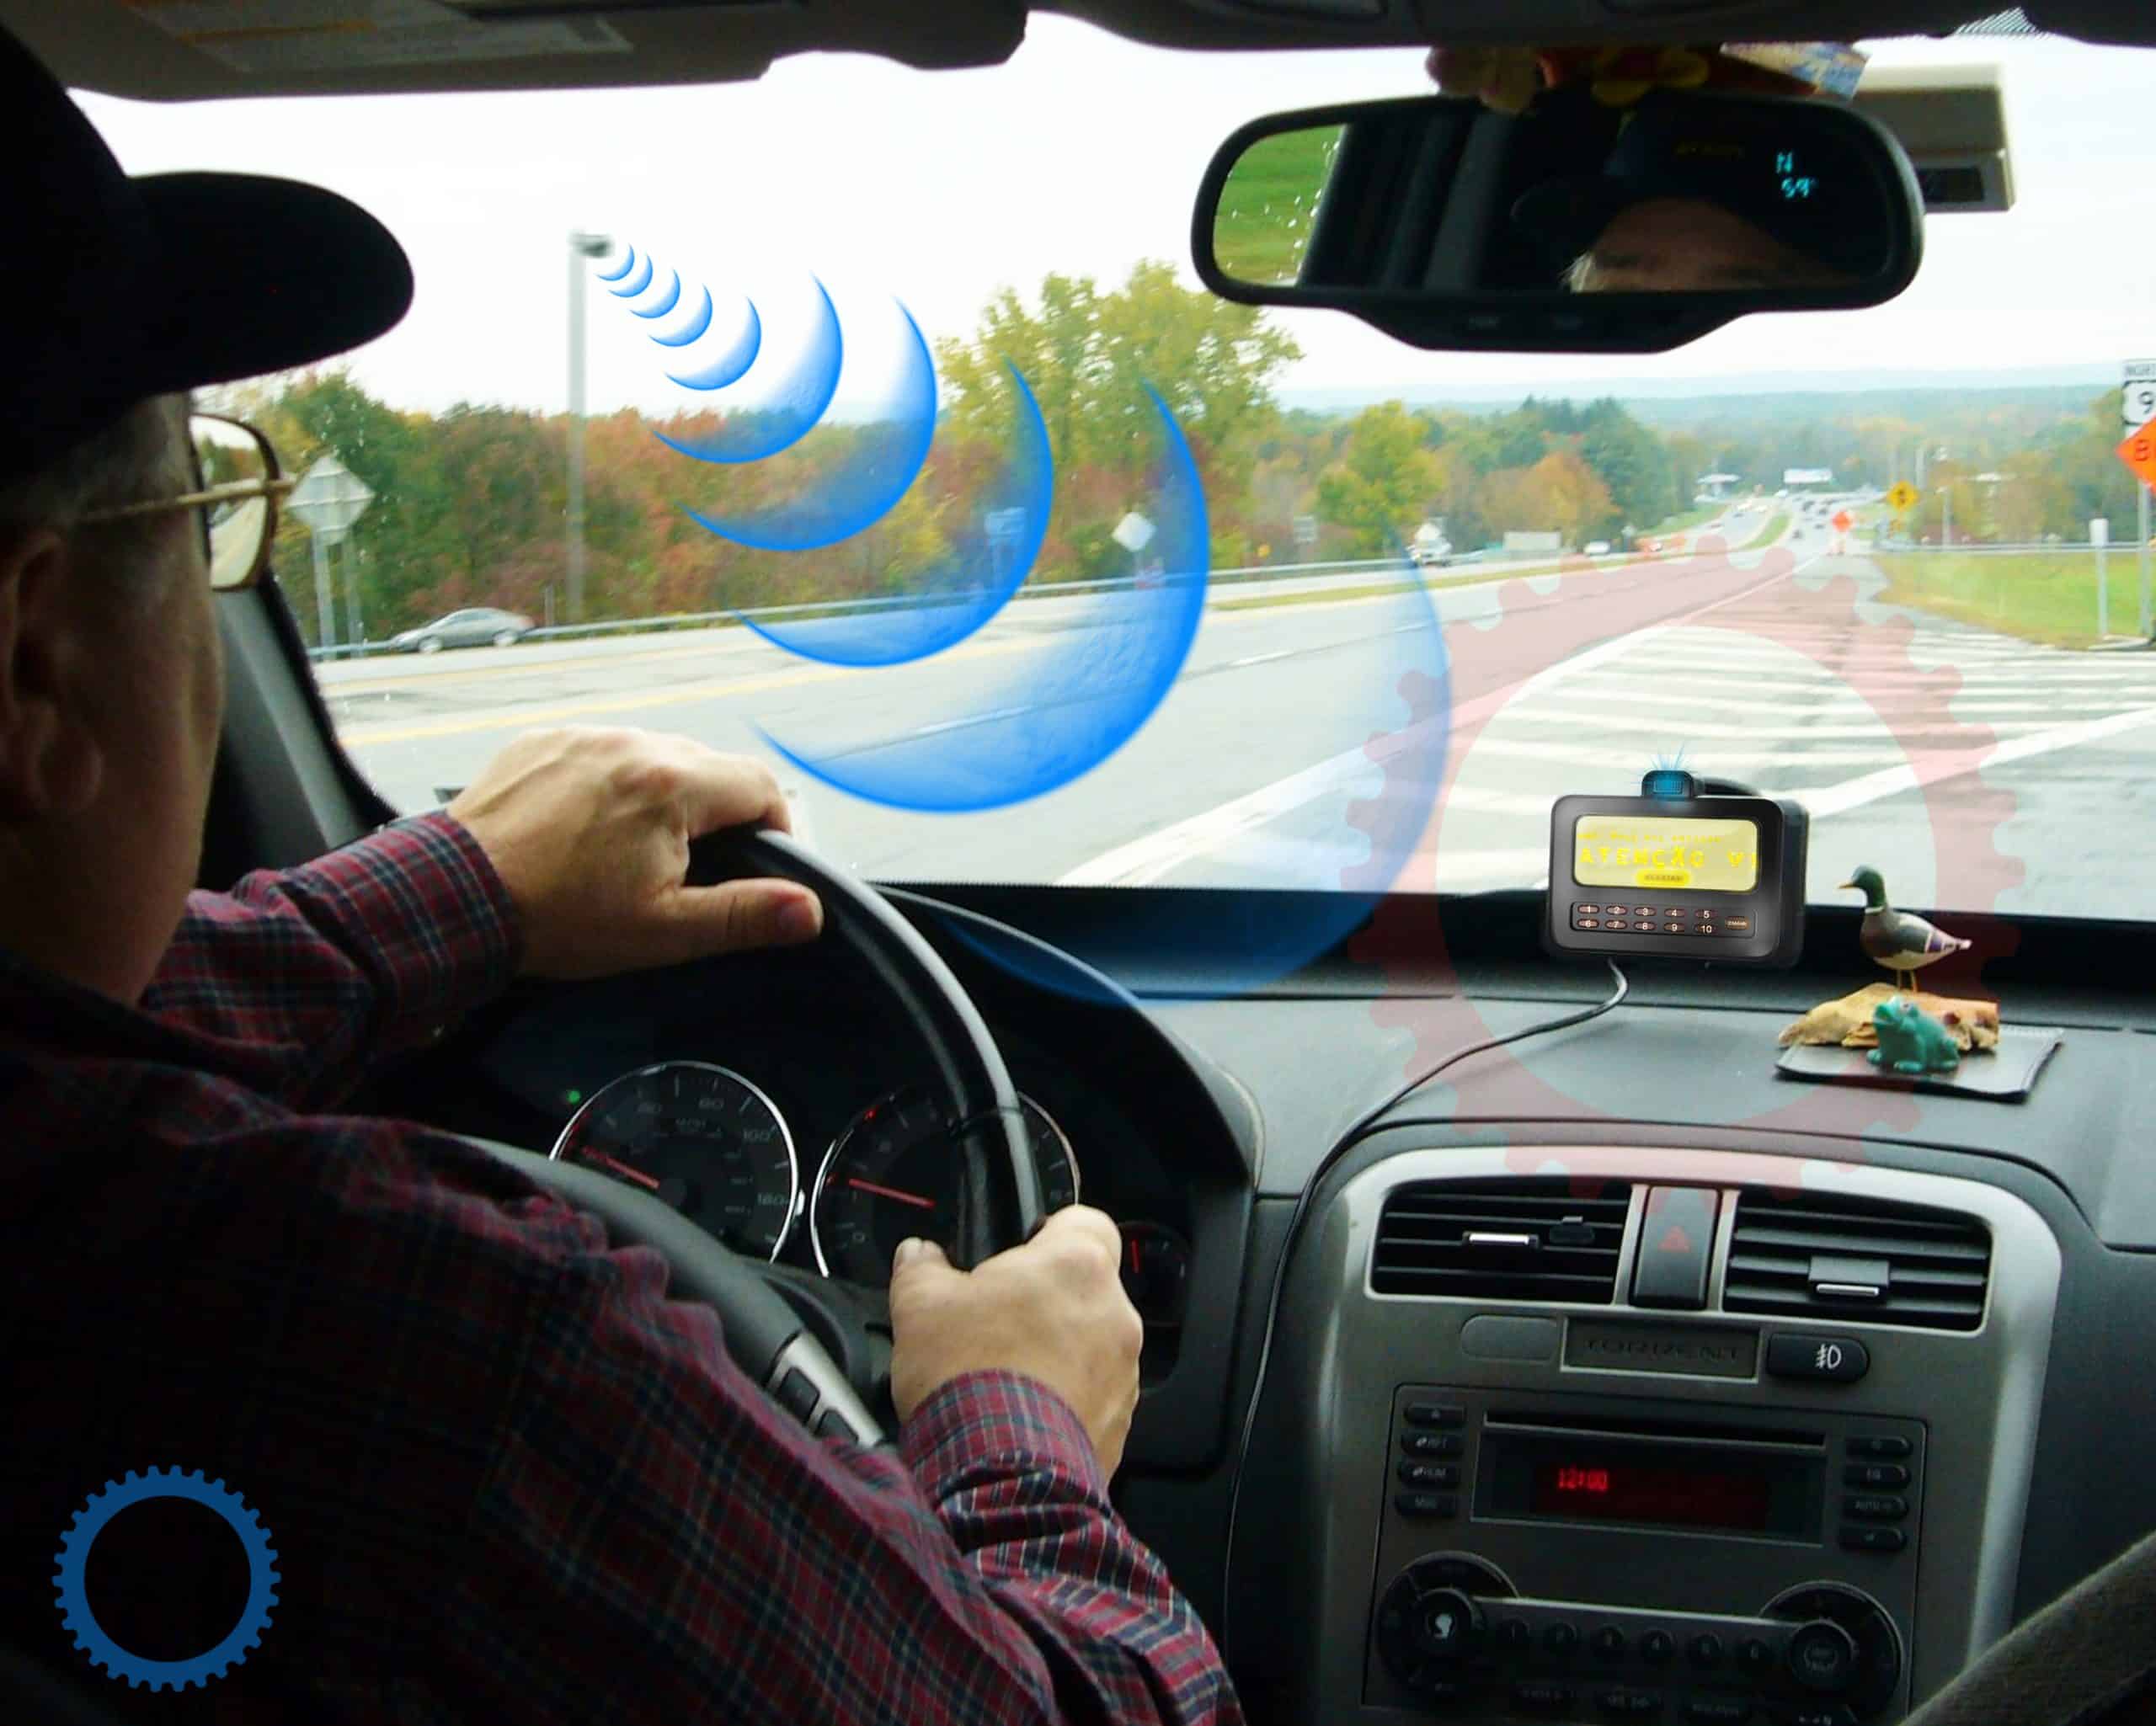 O dispositivo também facilita o rápido intercâmbio de informações entre motoristas, que poderão alertar uns aos outros sobre problemas identificados nas rodovias, como acidentes e animais à frente, incêndios, neblina, etc.